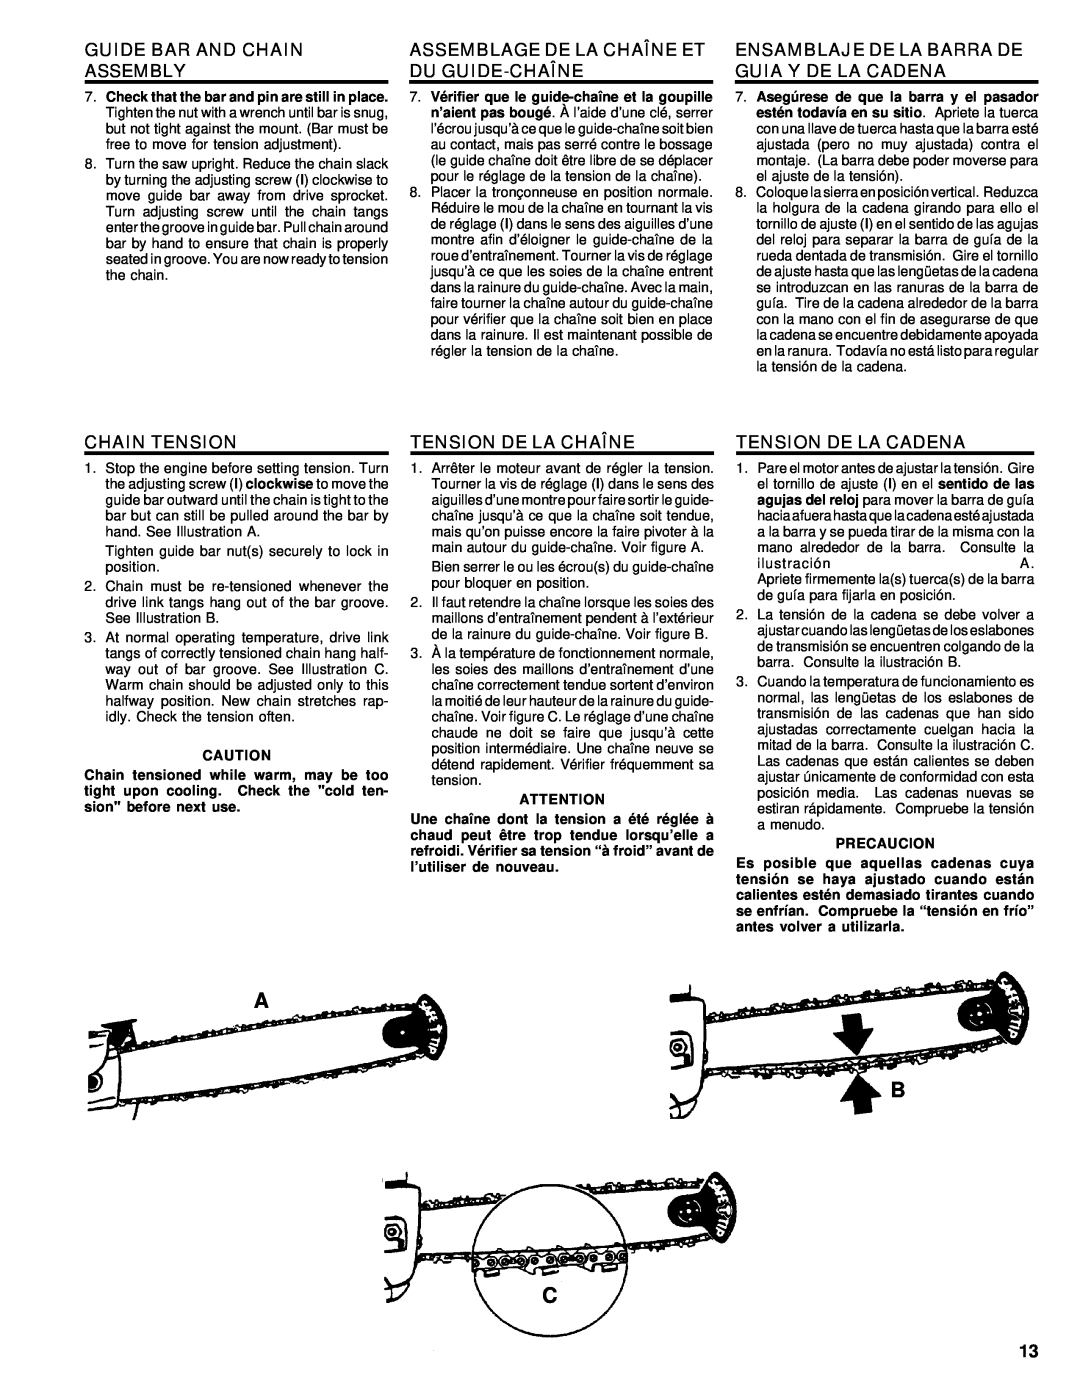 Homelite UT74020 manual Guide Bar And Chain Assembly, Assemblage De La Chaîne Et Du Guide-Chaîne, Chain Tension, Precaucion 